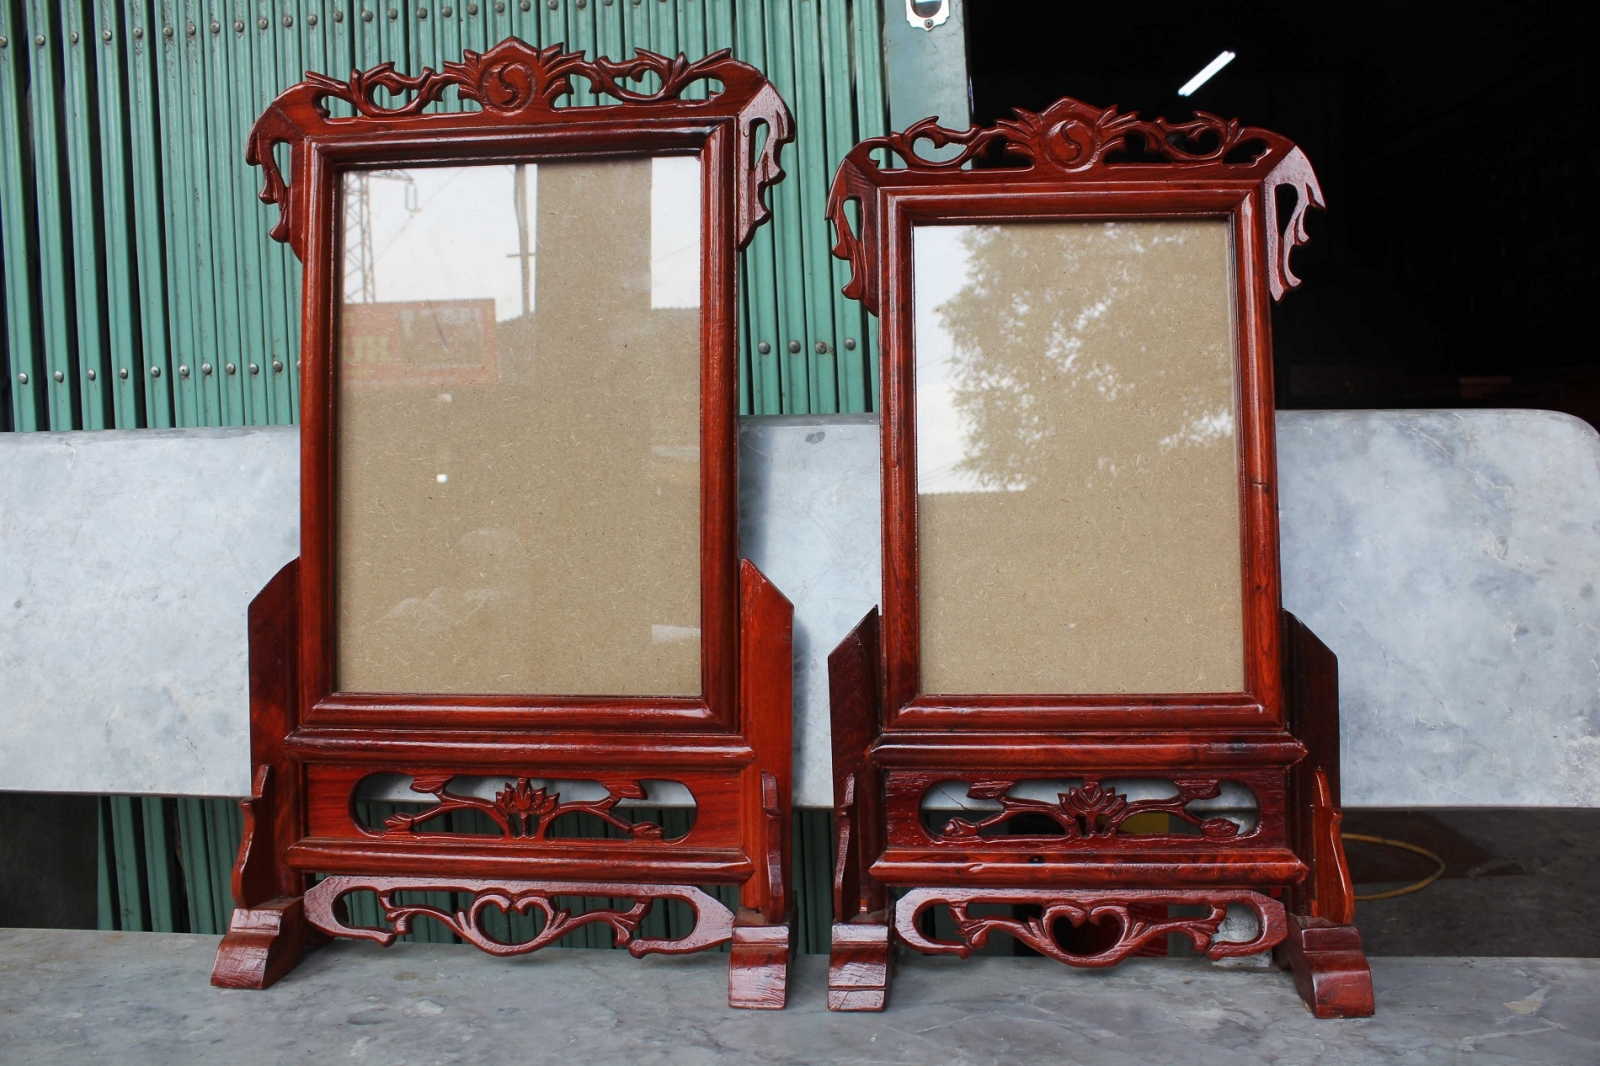 Chuyên cung cấp Khung ảnh thờ bằng gỗ giá rẻ tại Hà Nội | In Ảnh ...